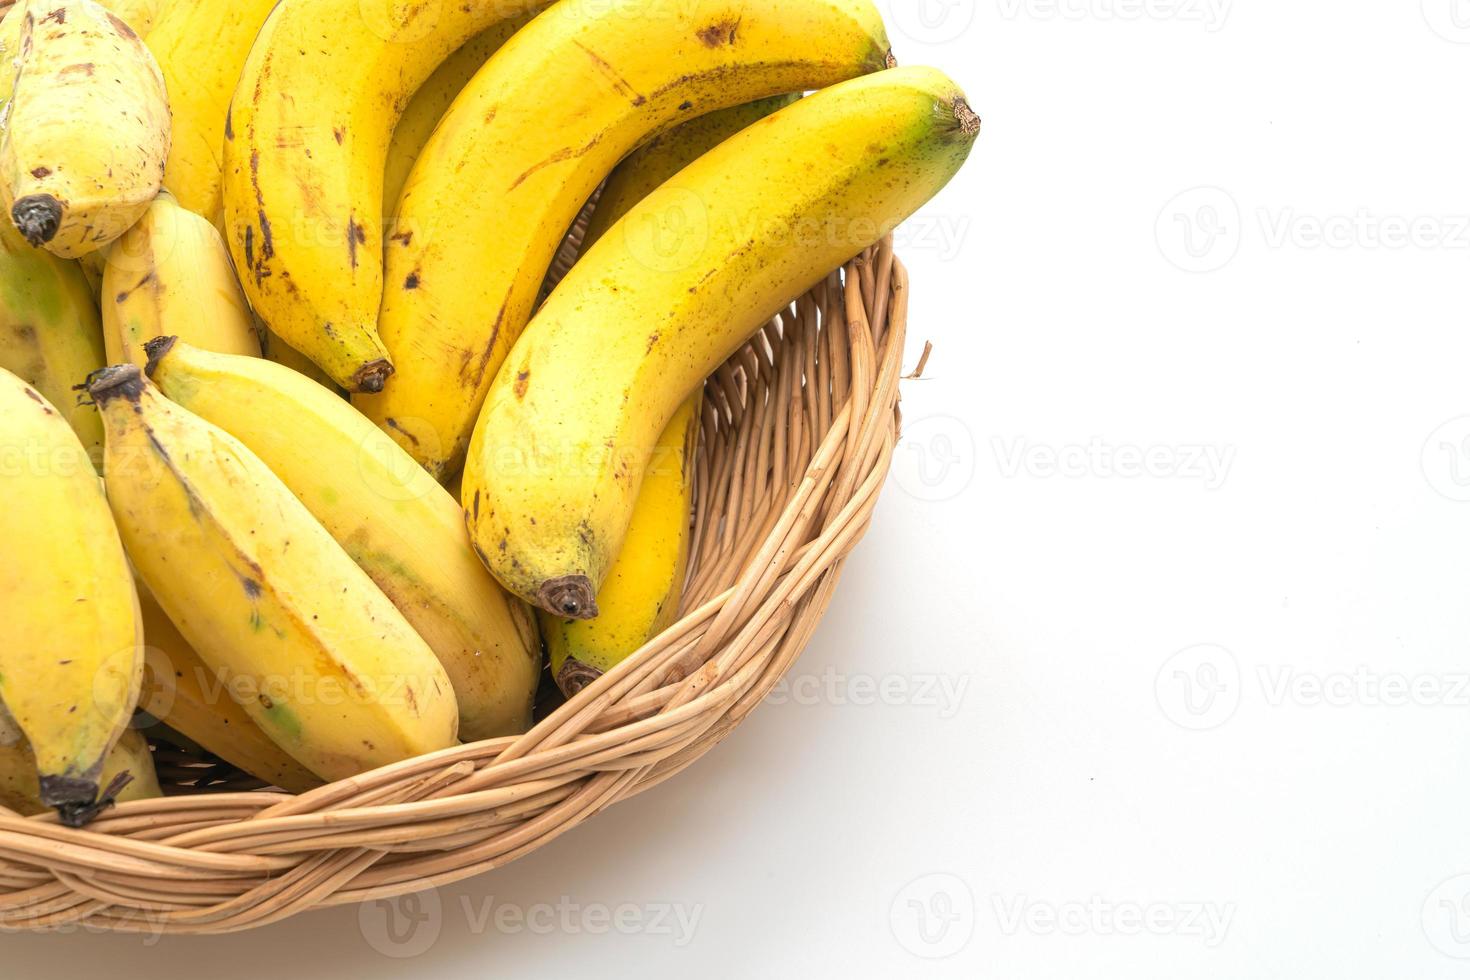 bananes jaunes fraîches dans le panier photo